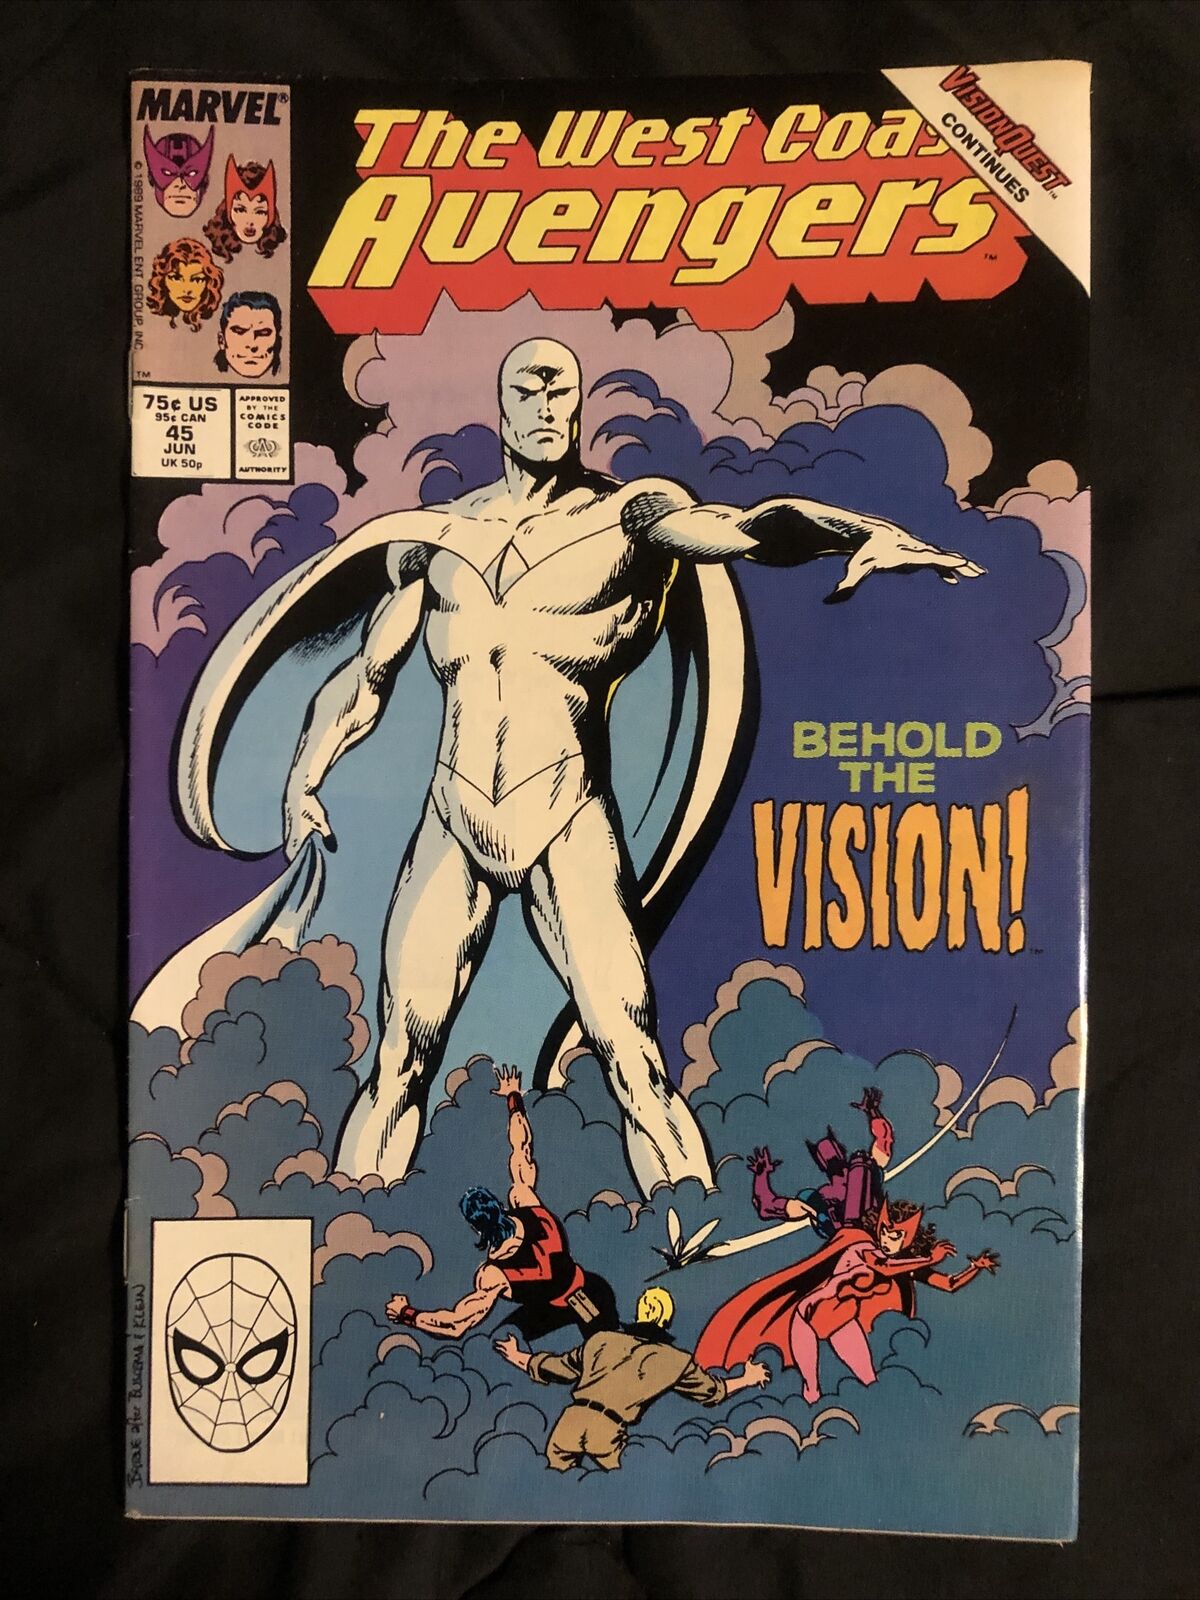 West Coast Avengers #45 (1989, Marvel) - 1st App White Vision